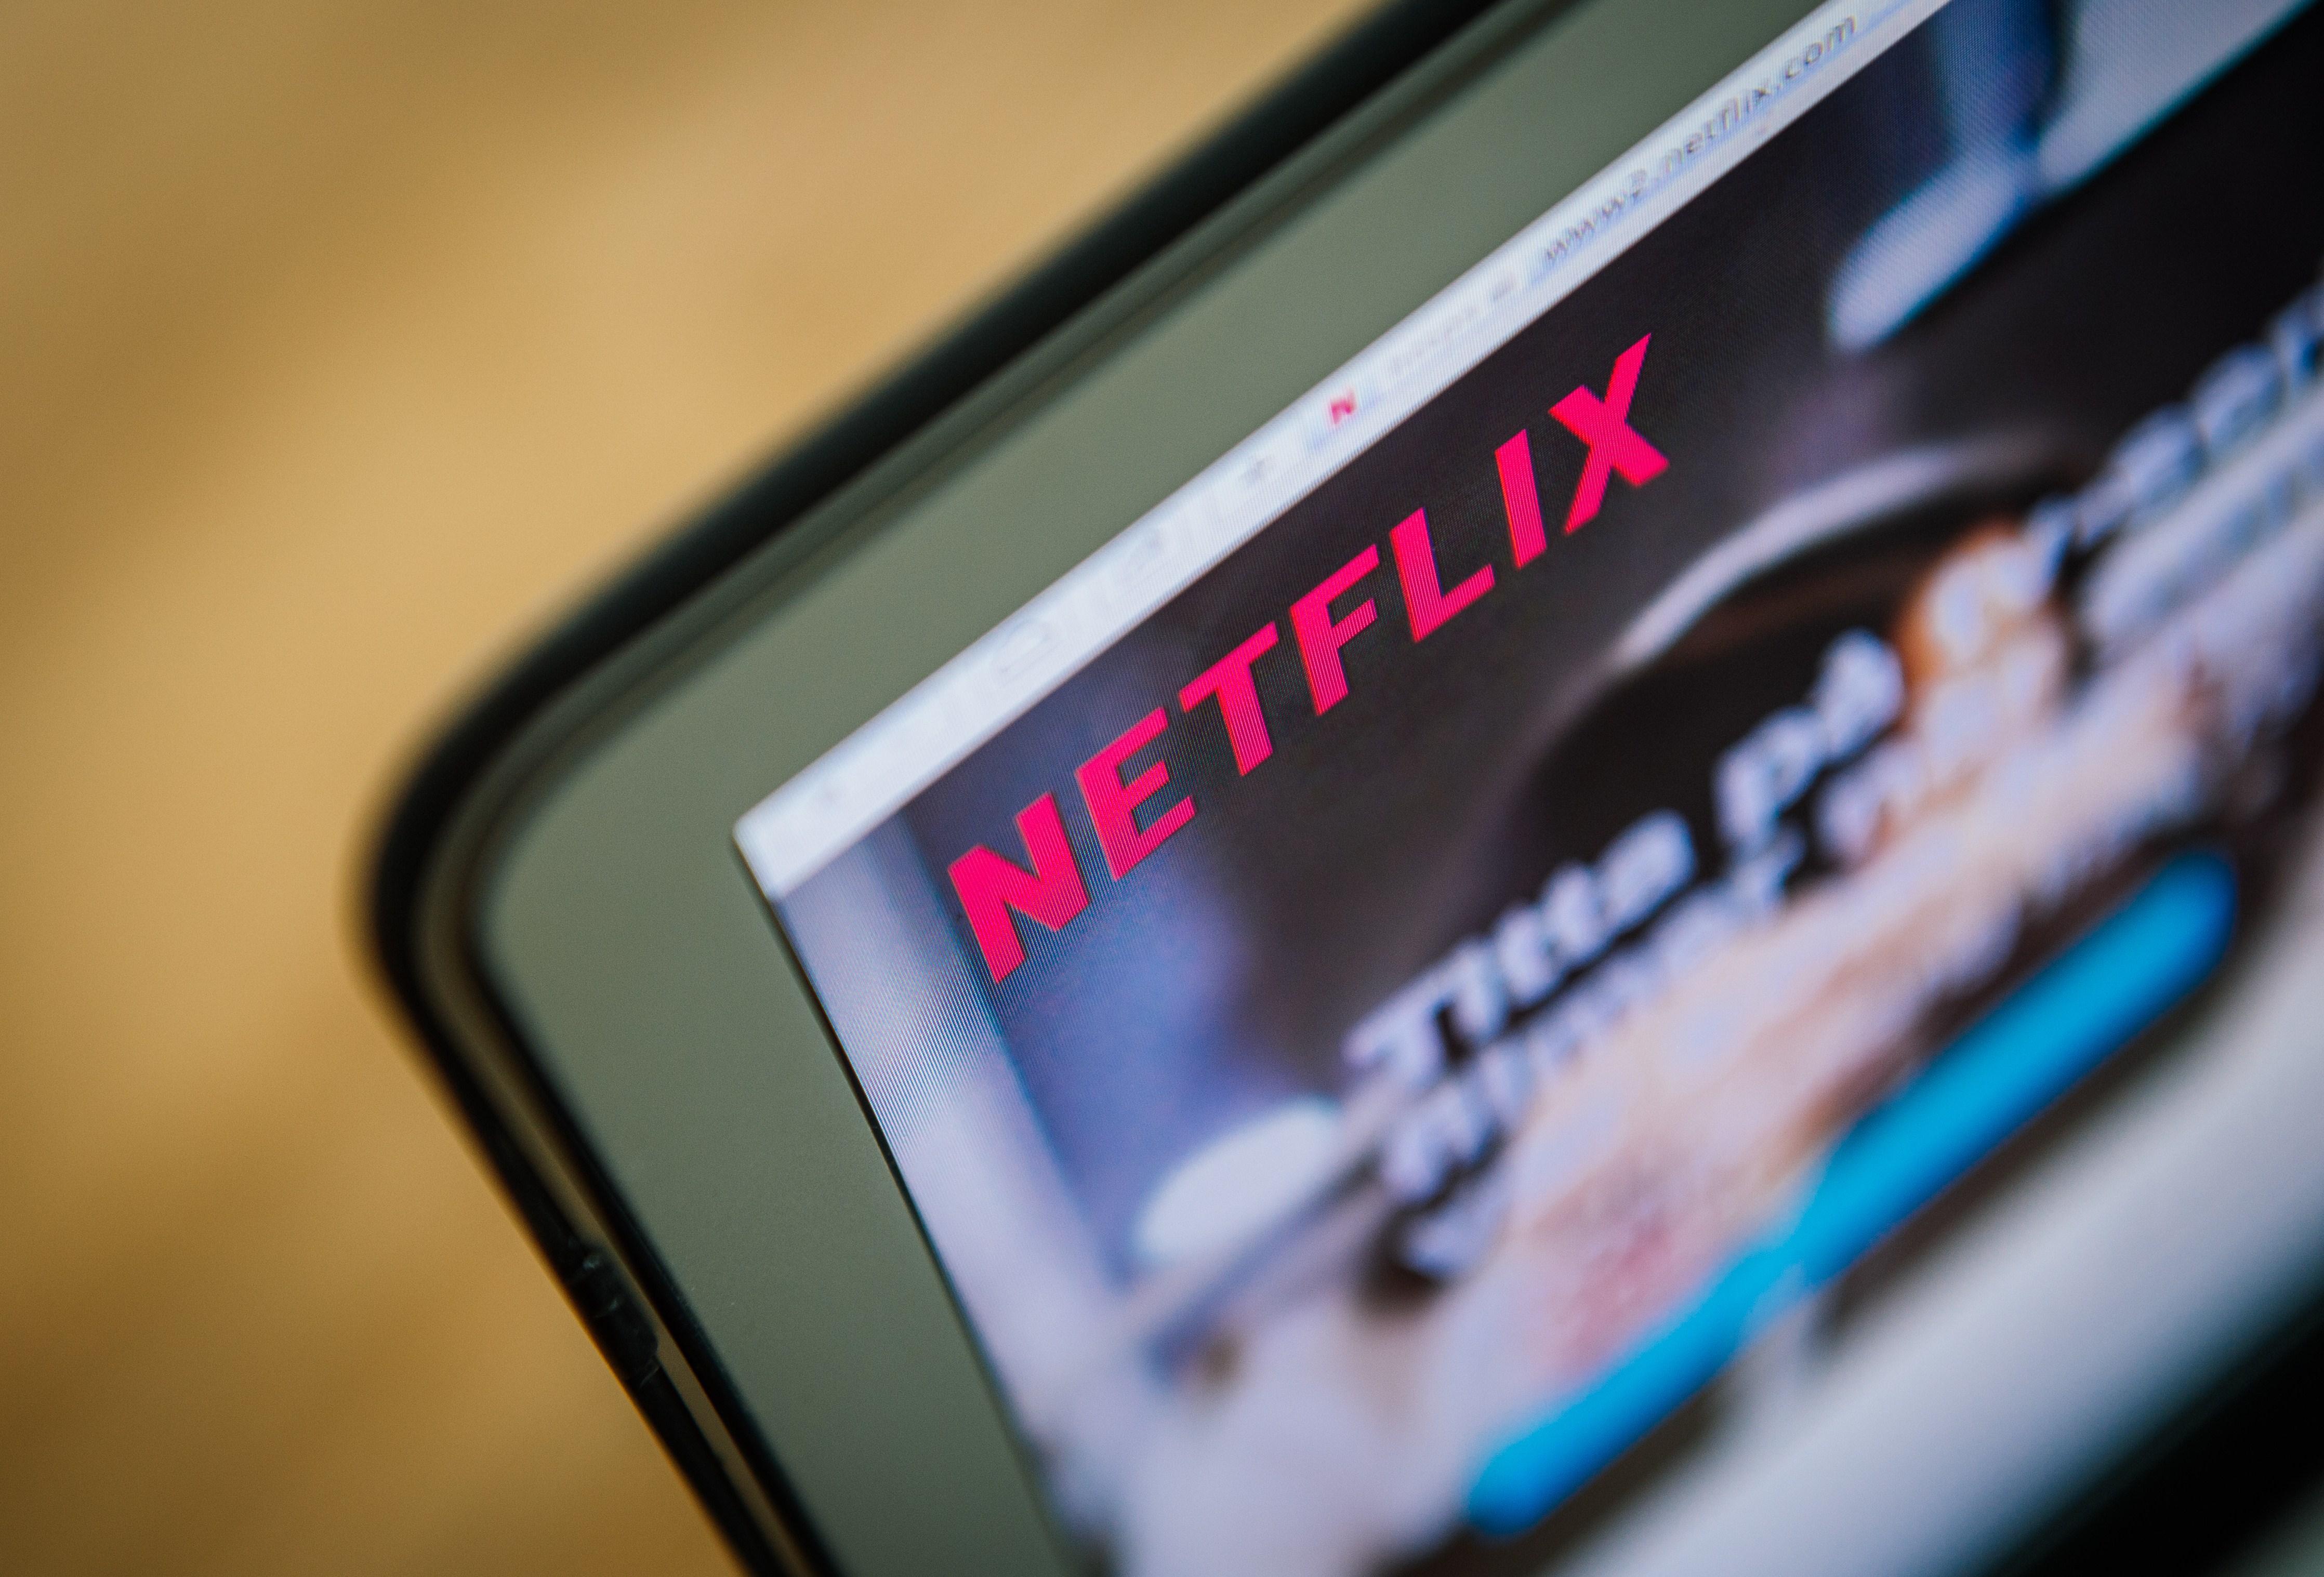 The Netflix logo on a computer screen 